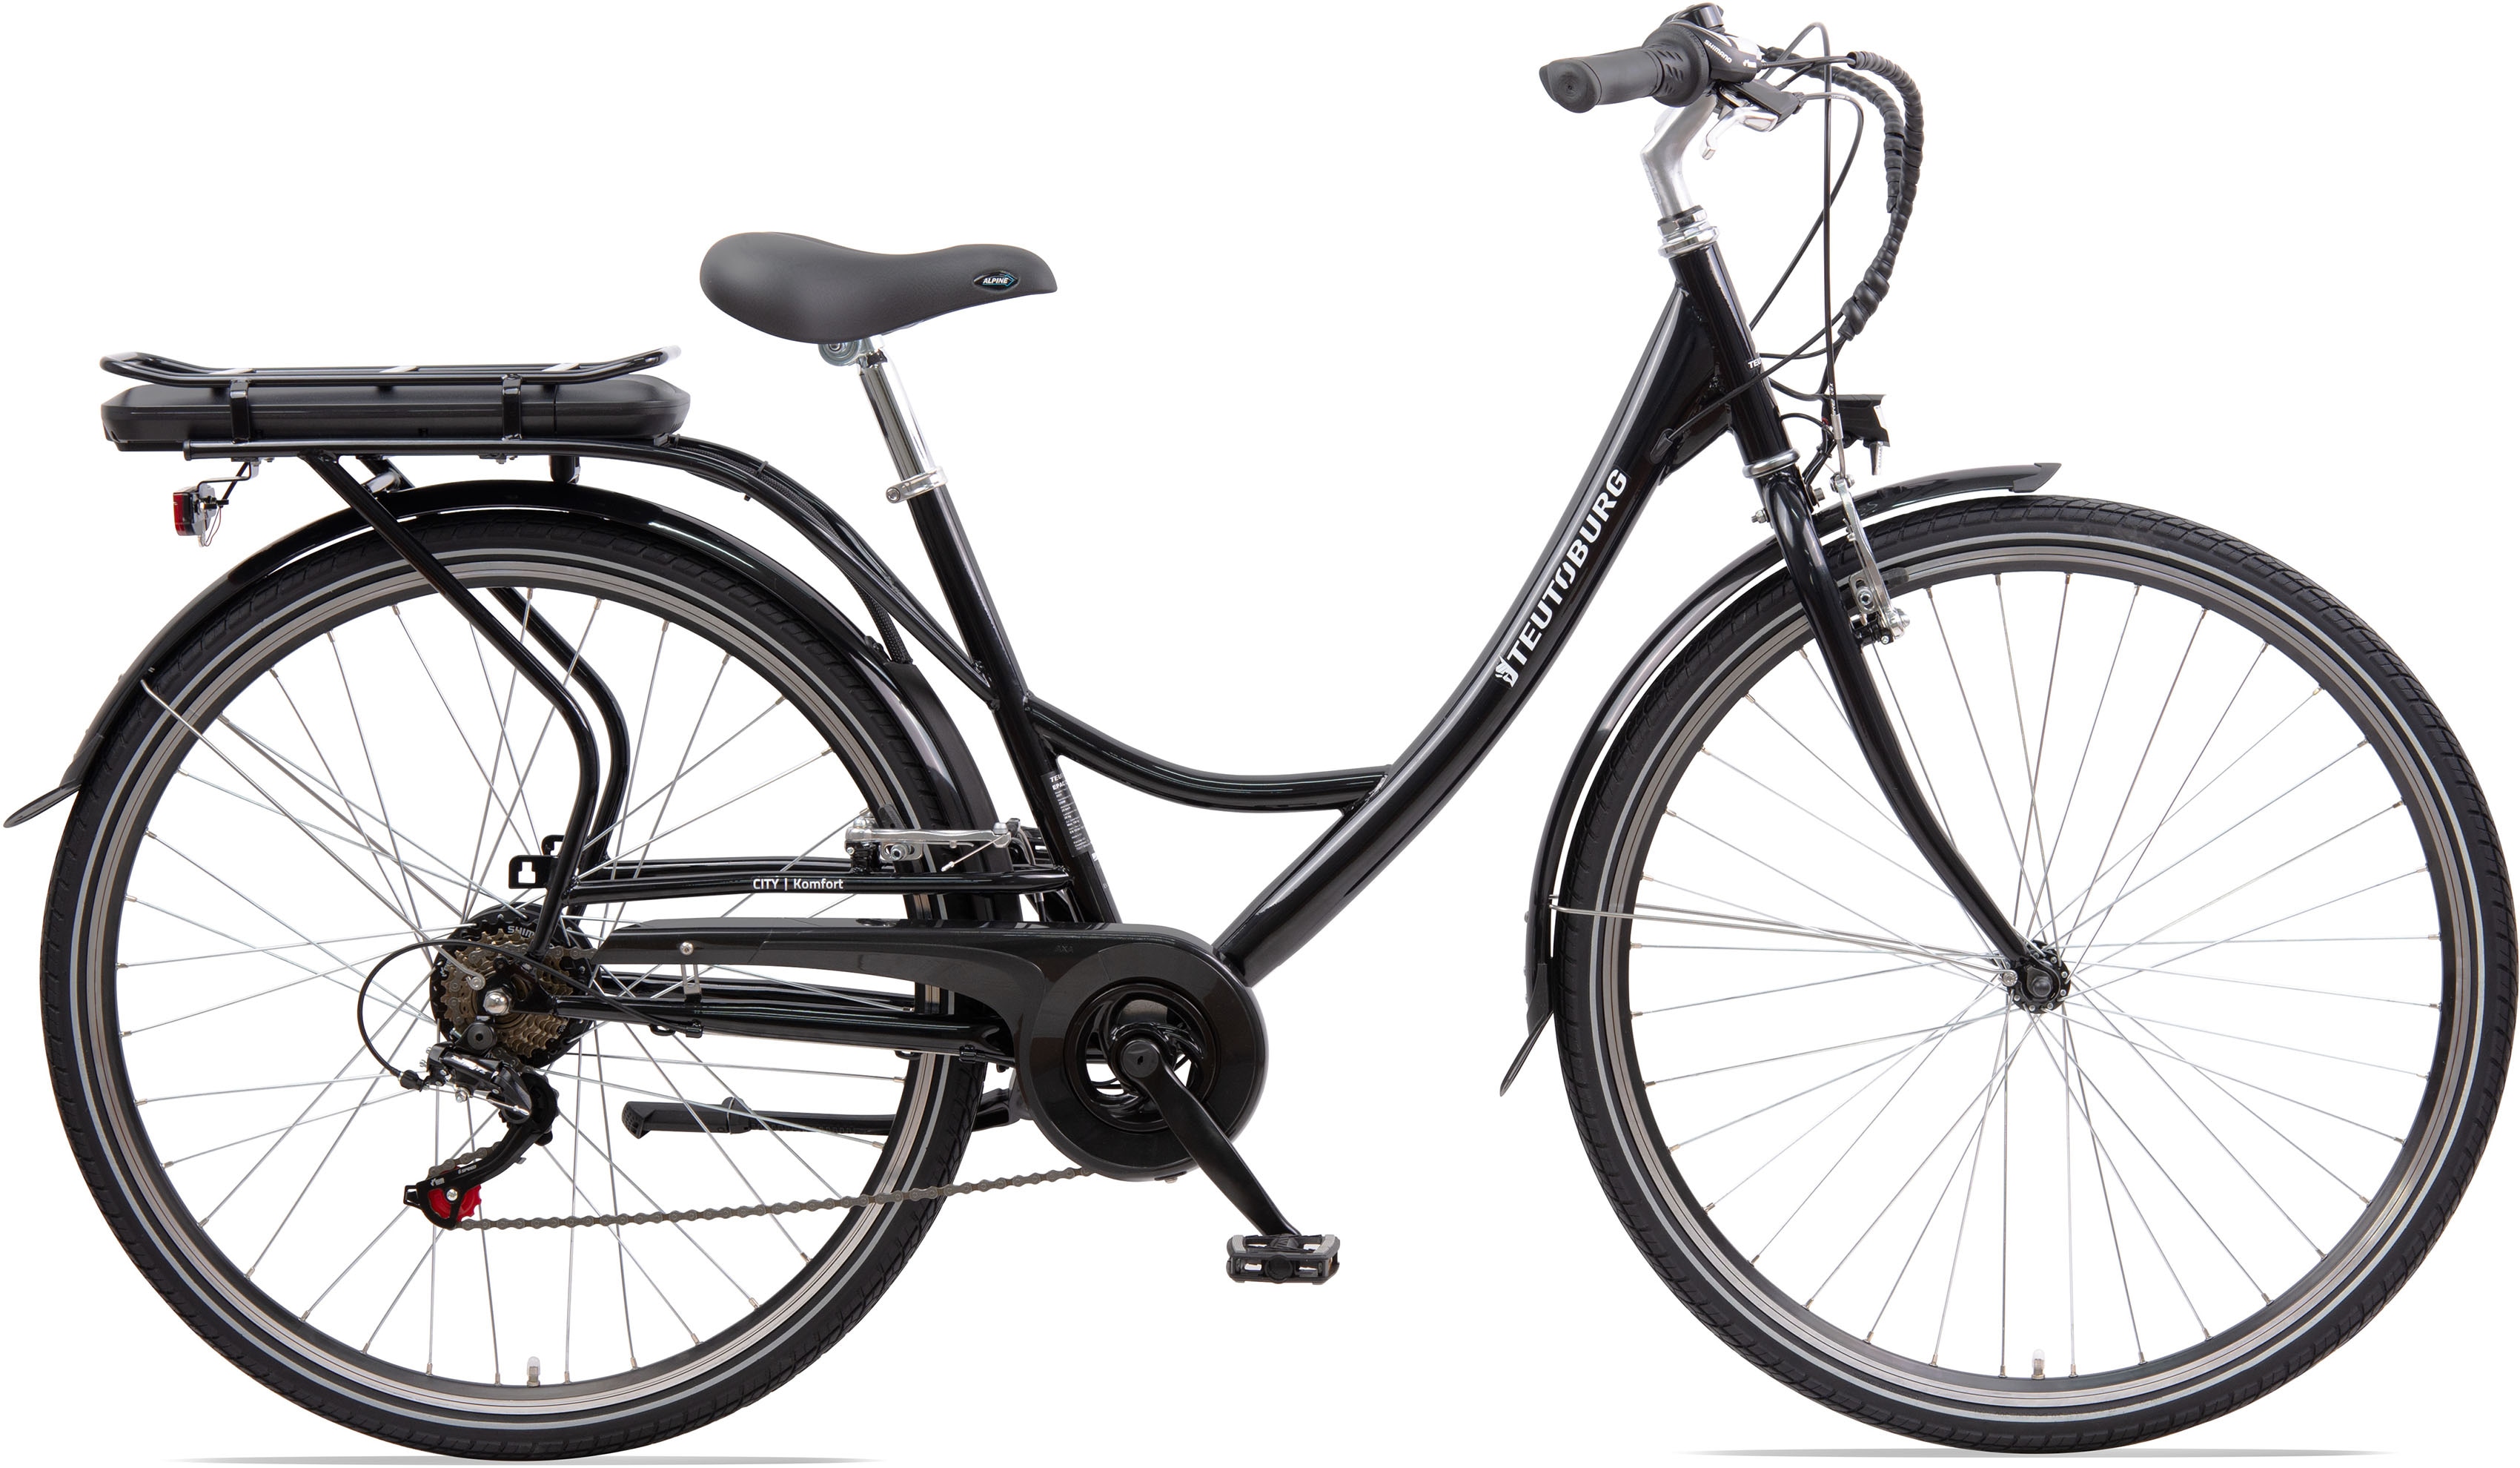 Teutoburg Senne Pedelec Citybike leicht Elektrofahrrad, 28 Zoll, mit 6-Gang Shimano Kettenschaltung, 250W und 10,4 Ah / 36 V Lithium-Ionen-Akku